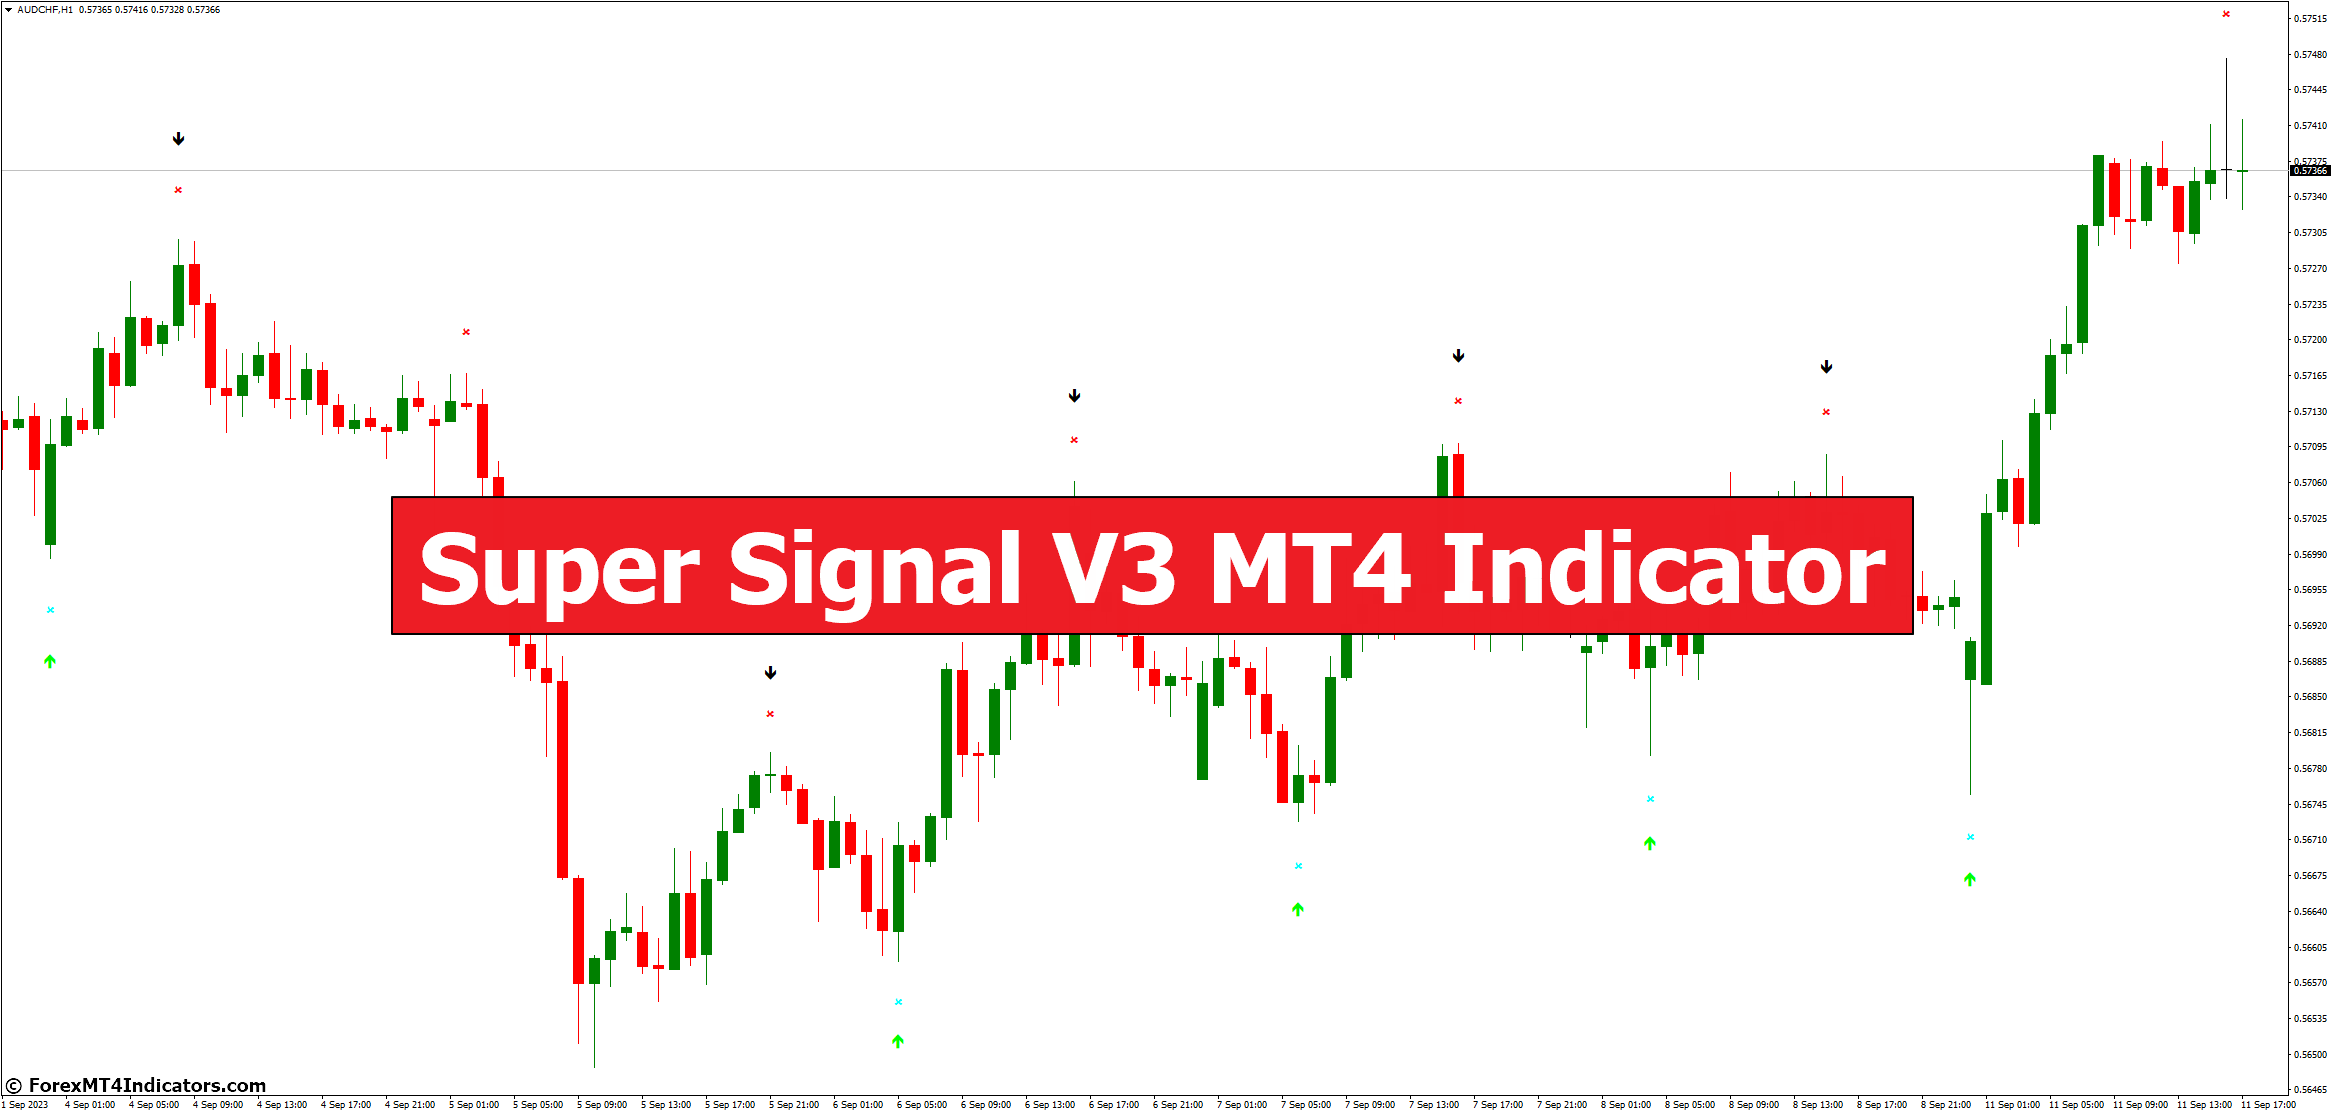 Super Signal V3 MT4 Indicator